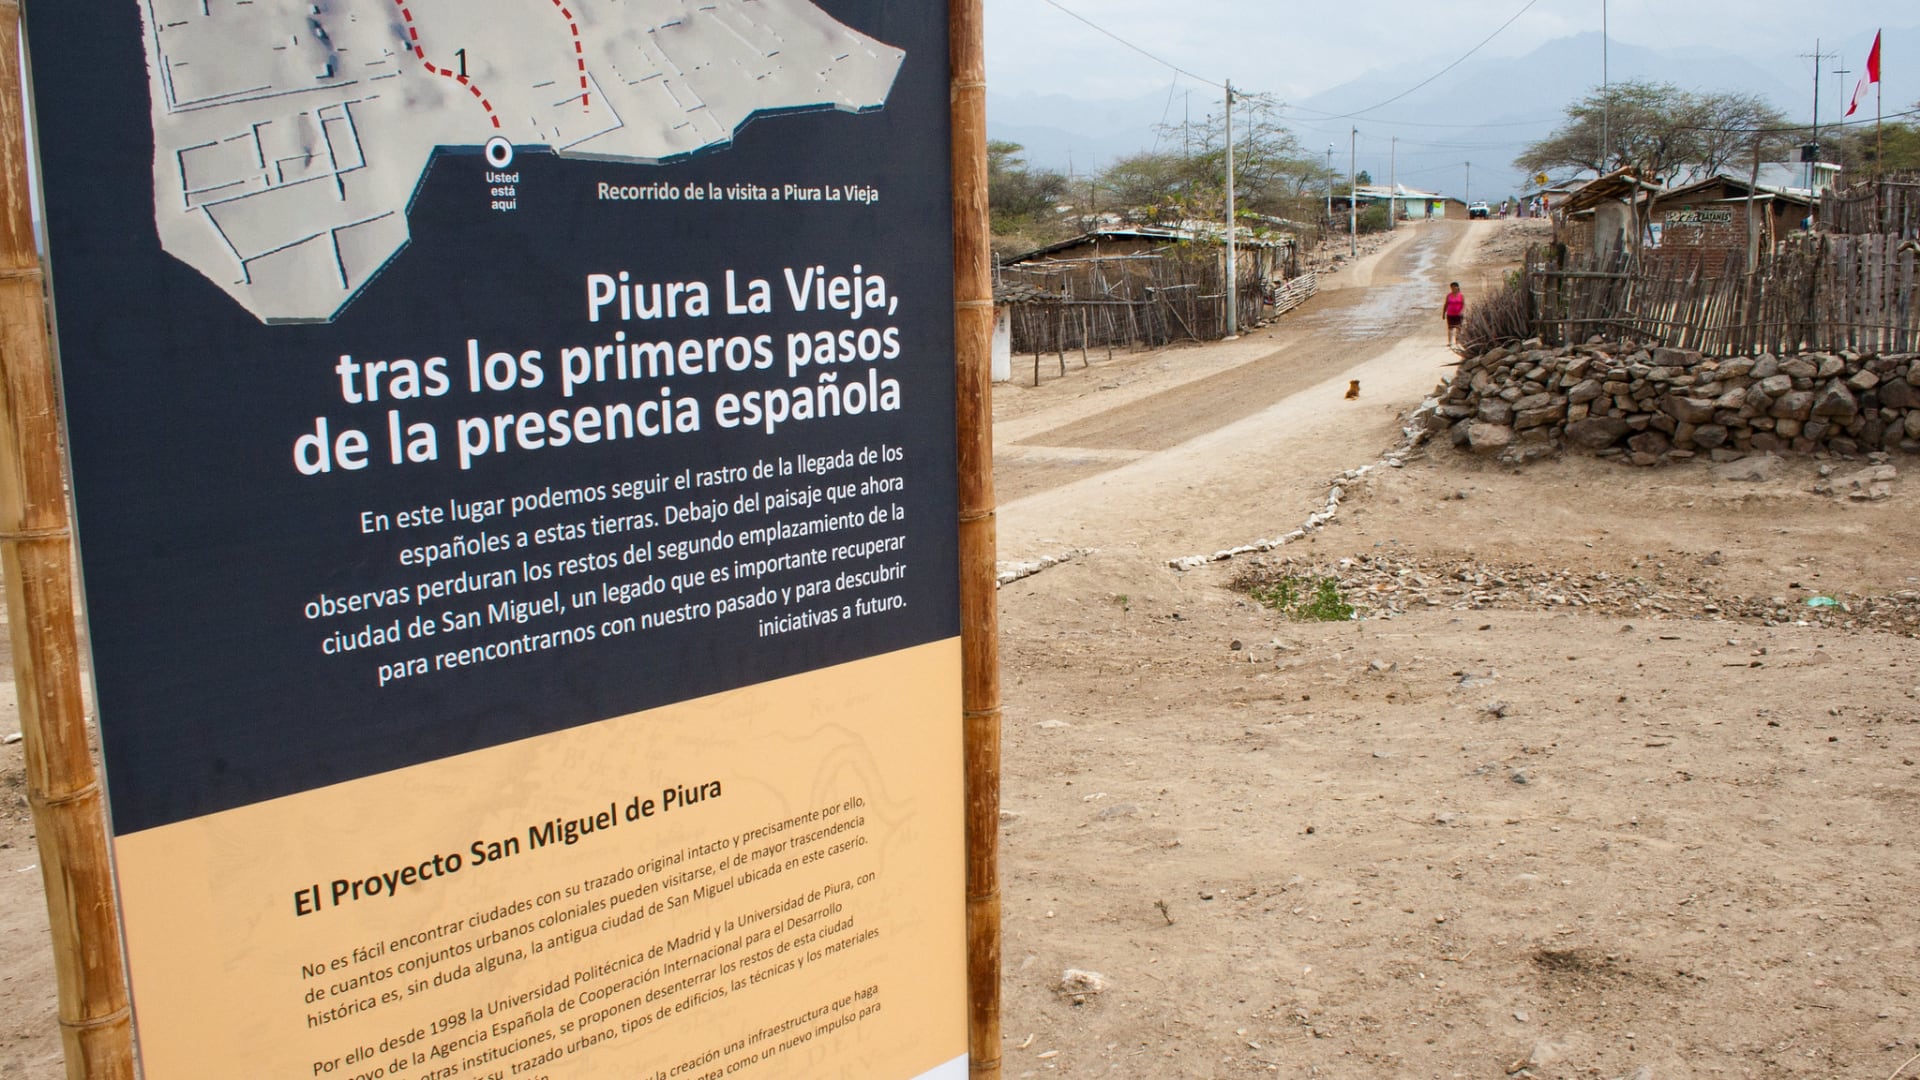 Entre traslados y catástrofes, Tangarará resiste como testigo silencioso de la historia peruana, esperando aún su reconocimiento oficial como distrito.
Foto: UDEP